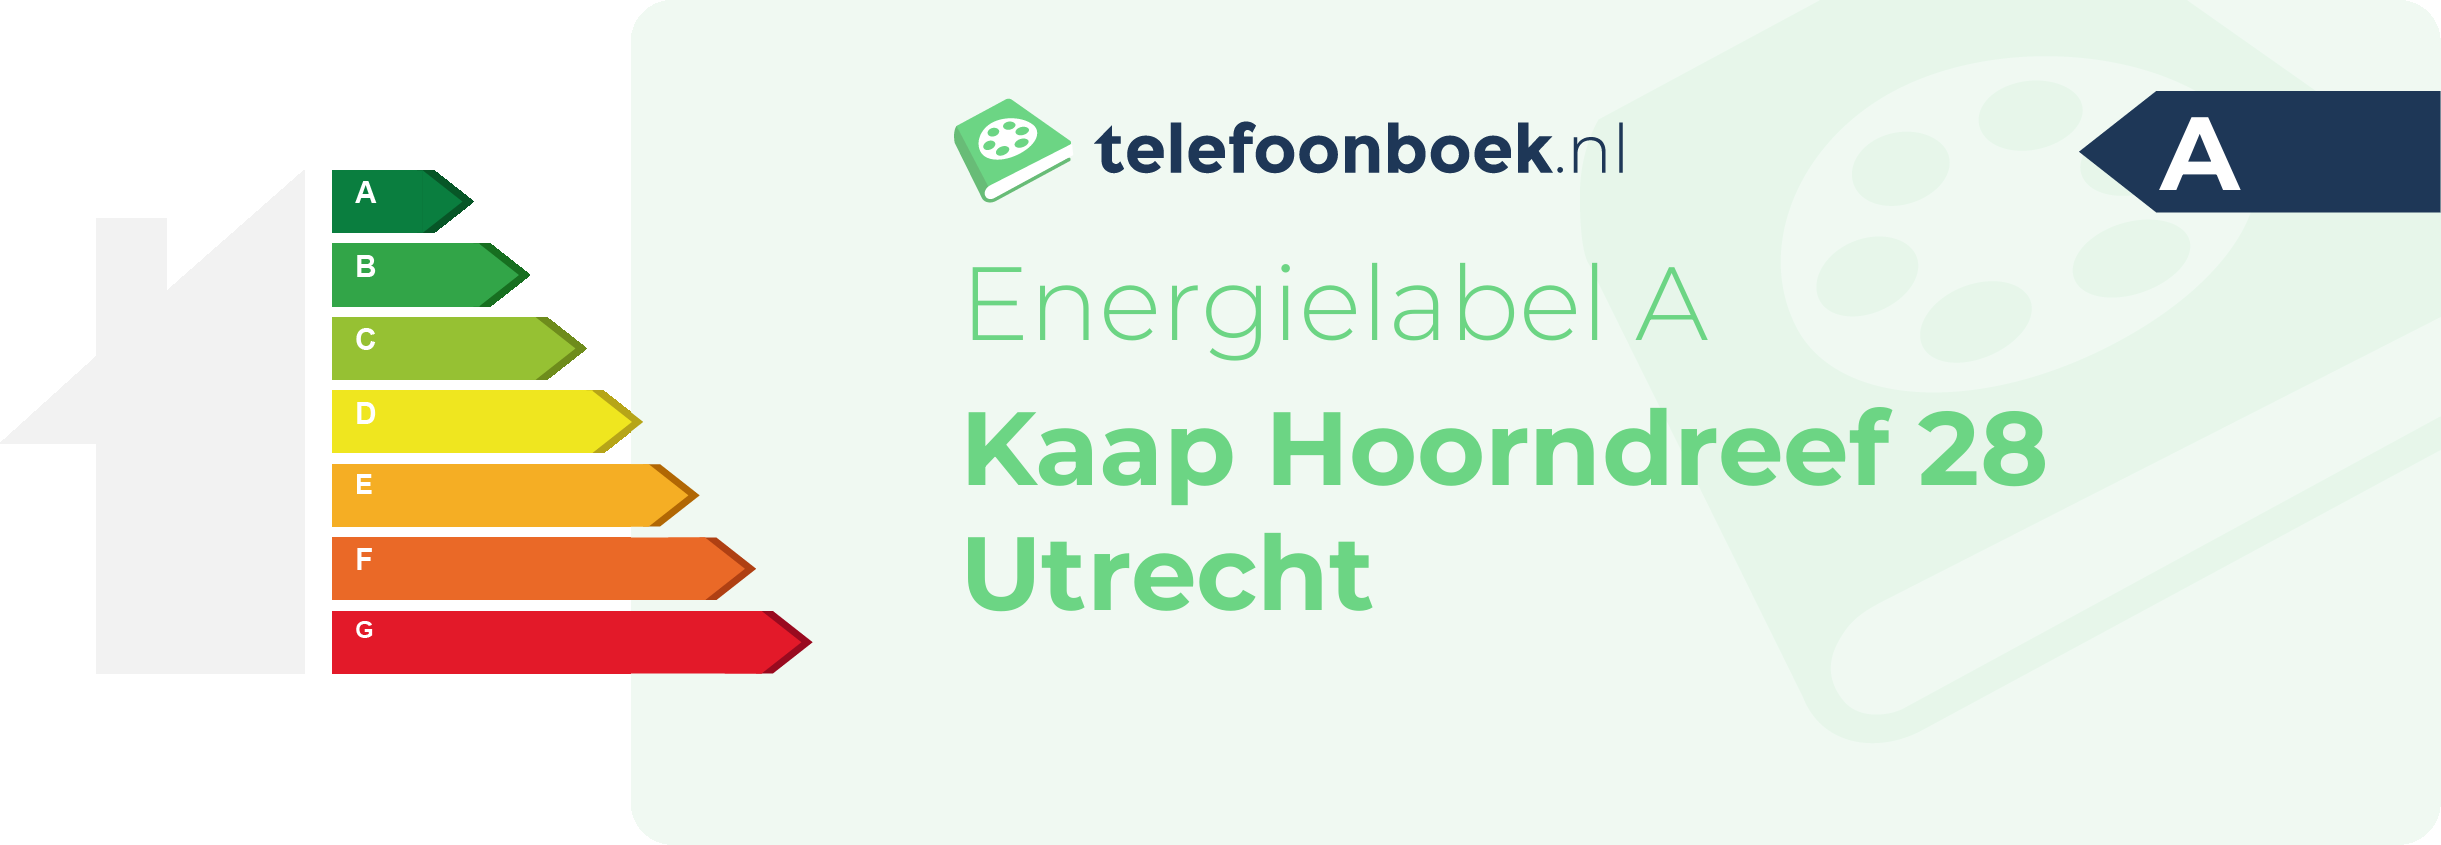 Energielabel Kaap Hoorndreef 28 Utrecht